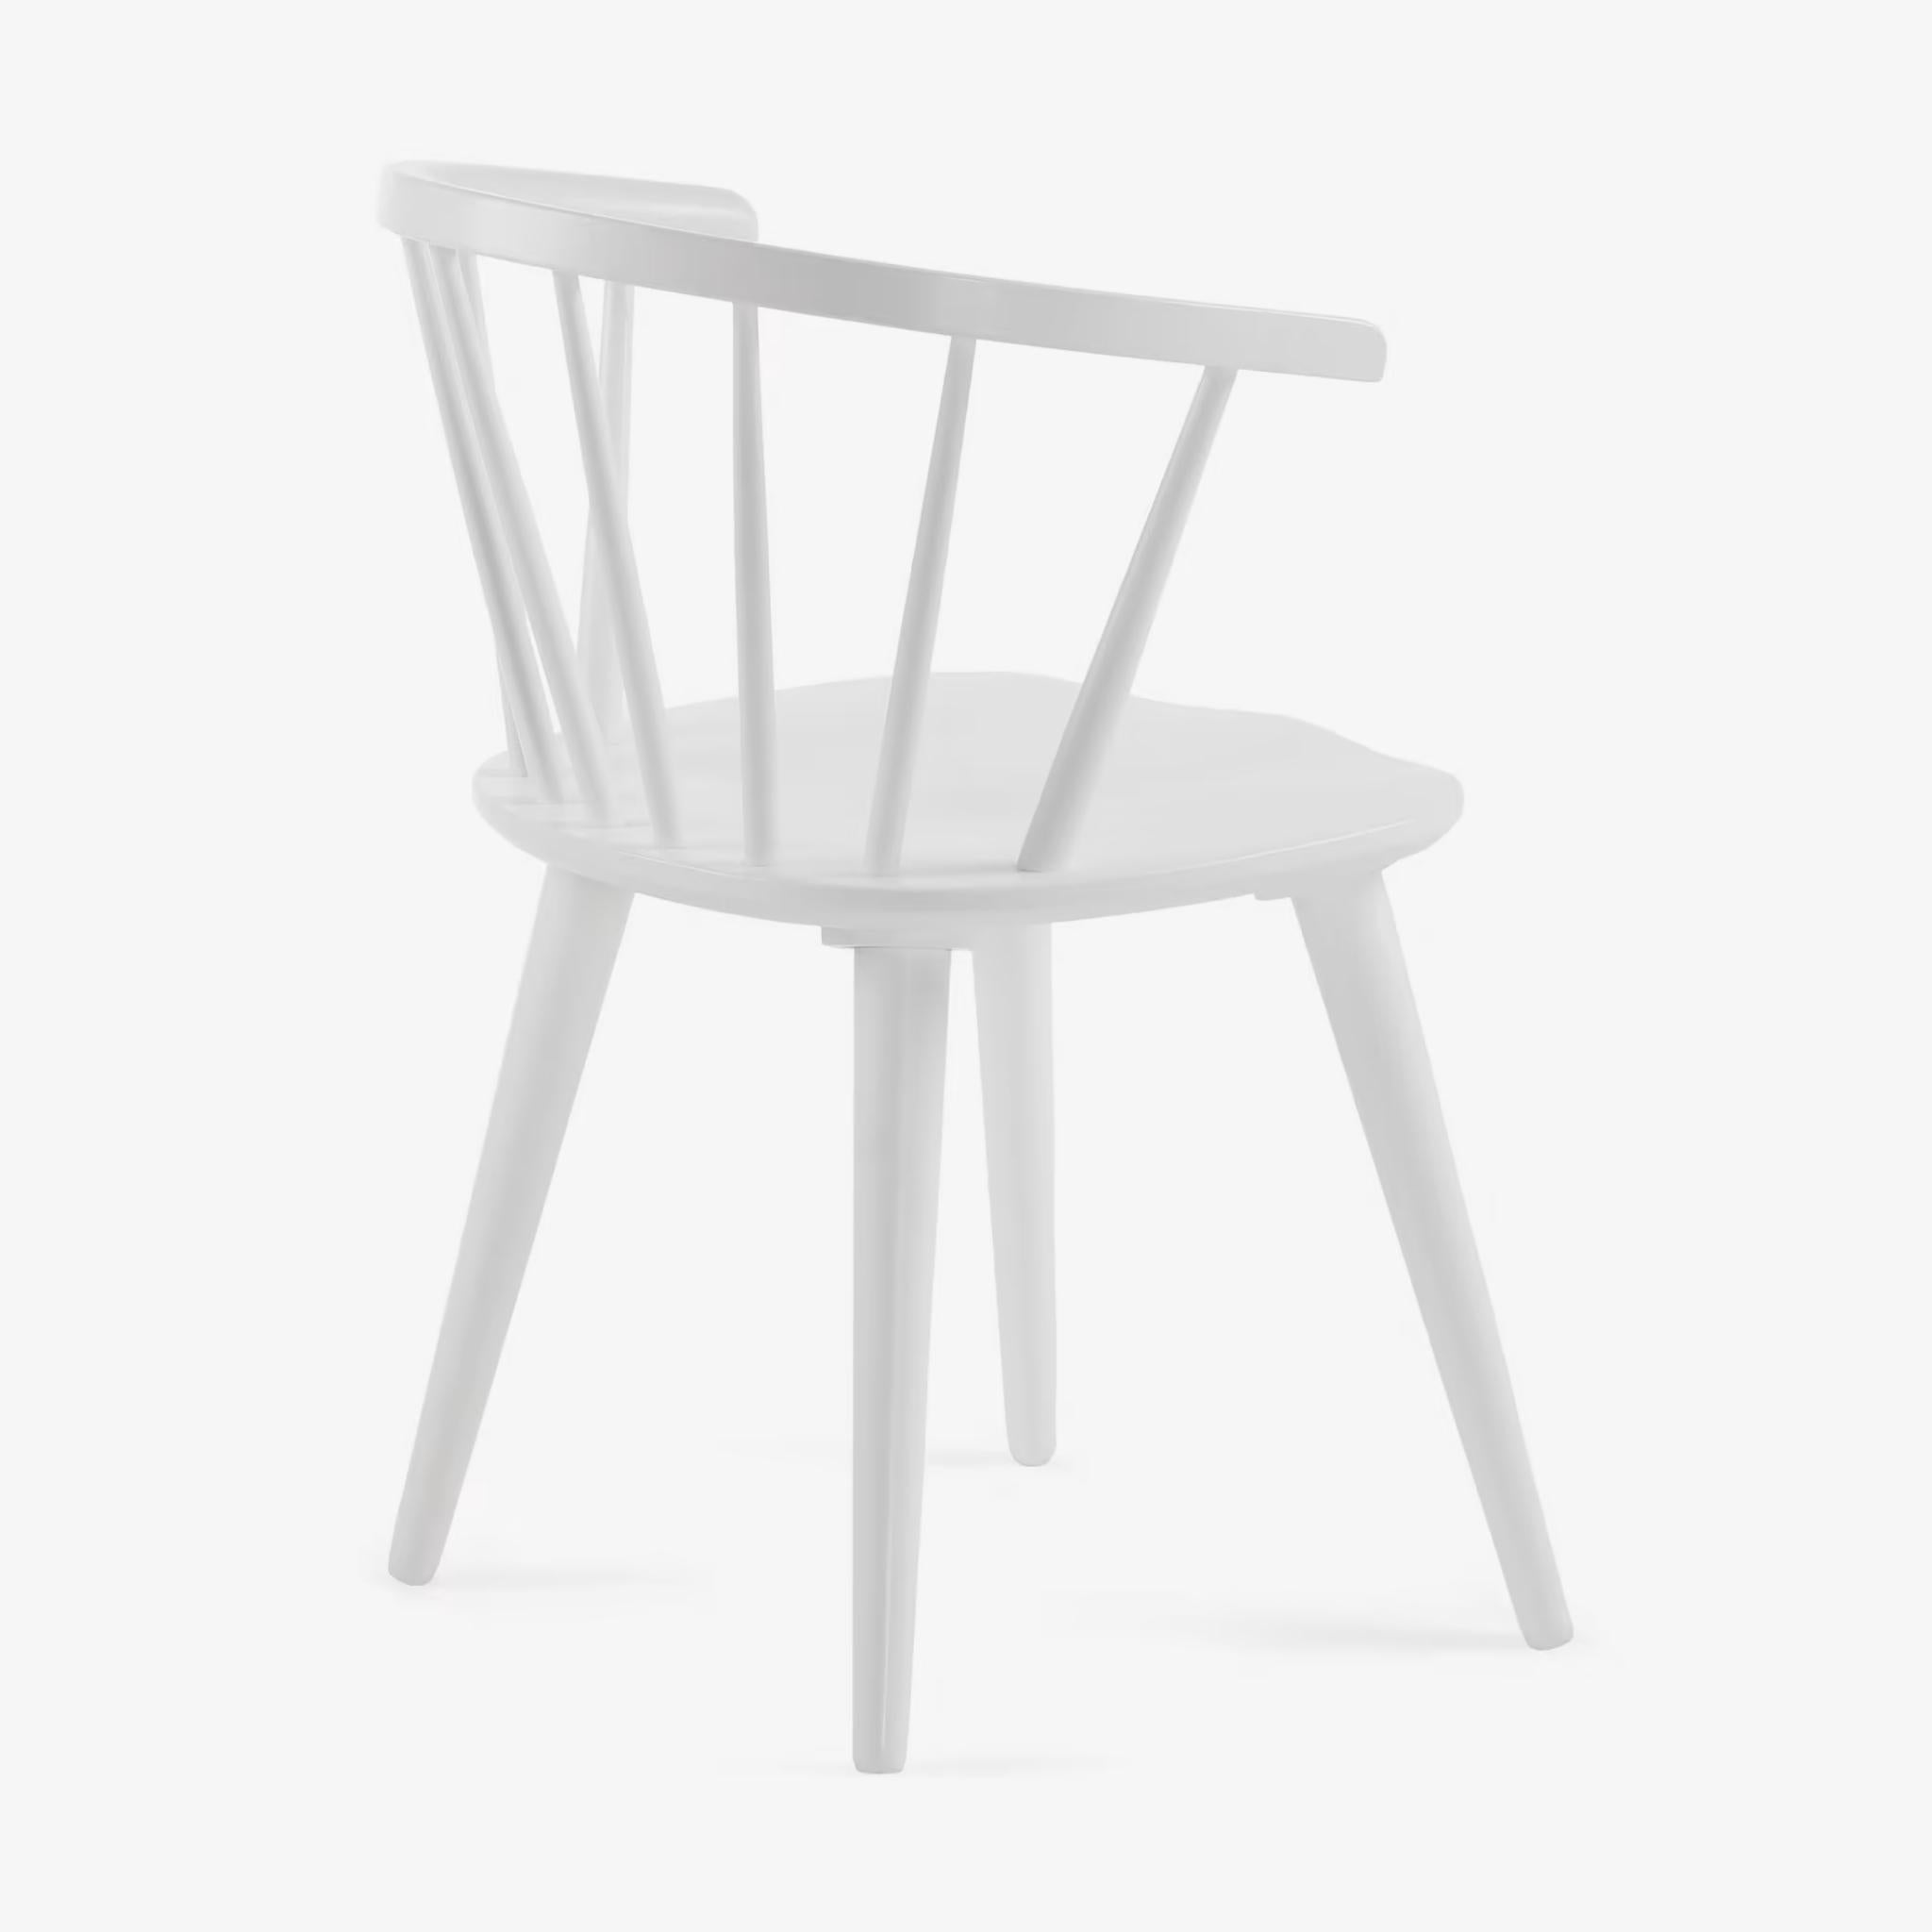 Kave Home Trise Stuhl - Farbe Weiß - SKU #CC0219M05 - weißer Hintergrund Rückseite